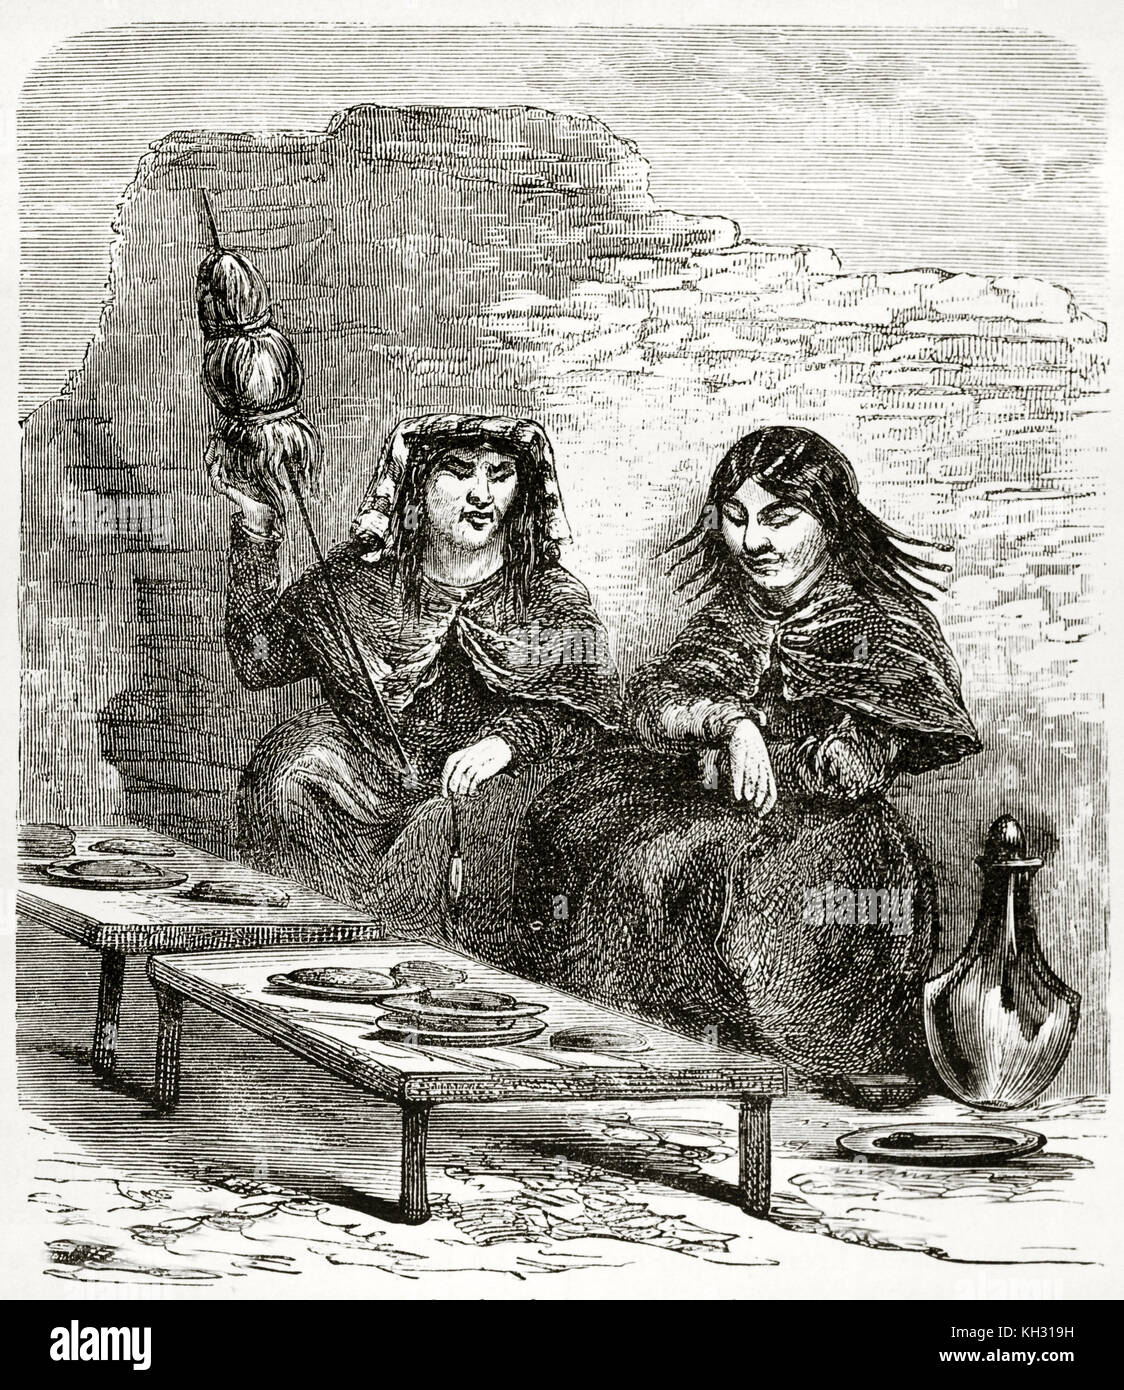 Ilustración antigua de mujeres peruanas vendiendo pasteles. Por Riou, publ. en le Tour du Monde, París, 1863 Foto de stock